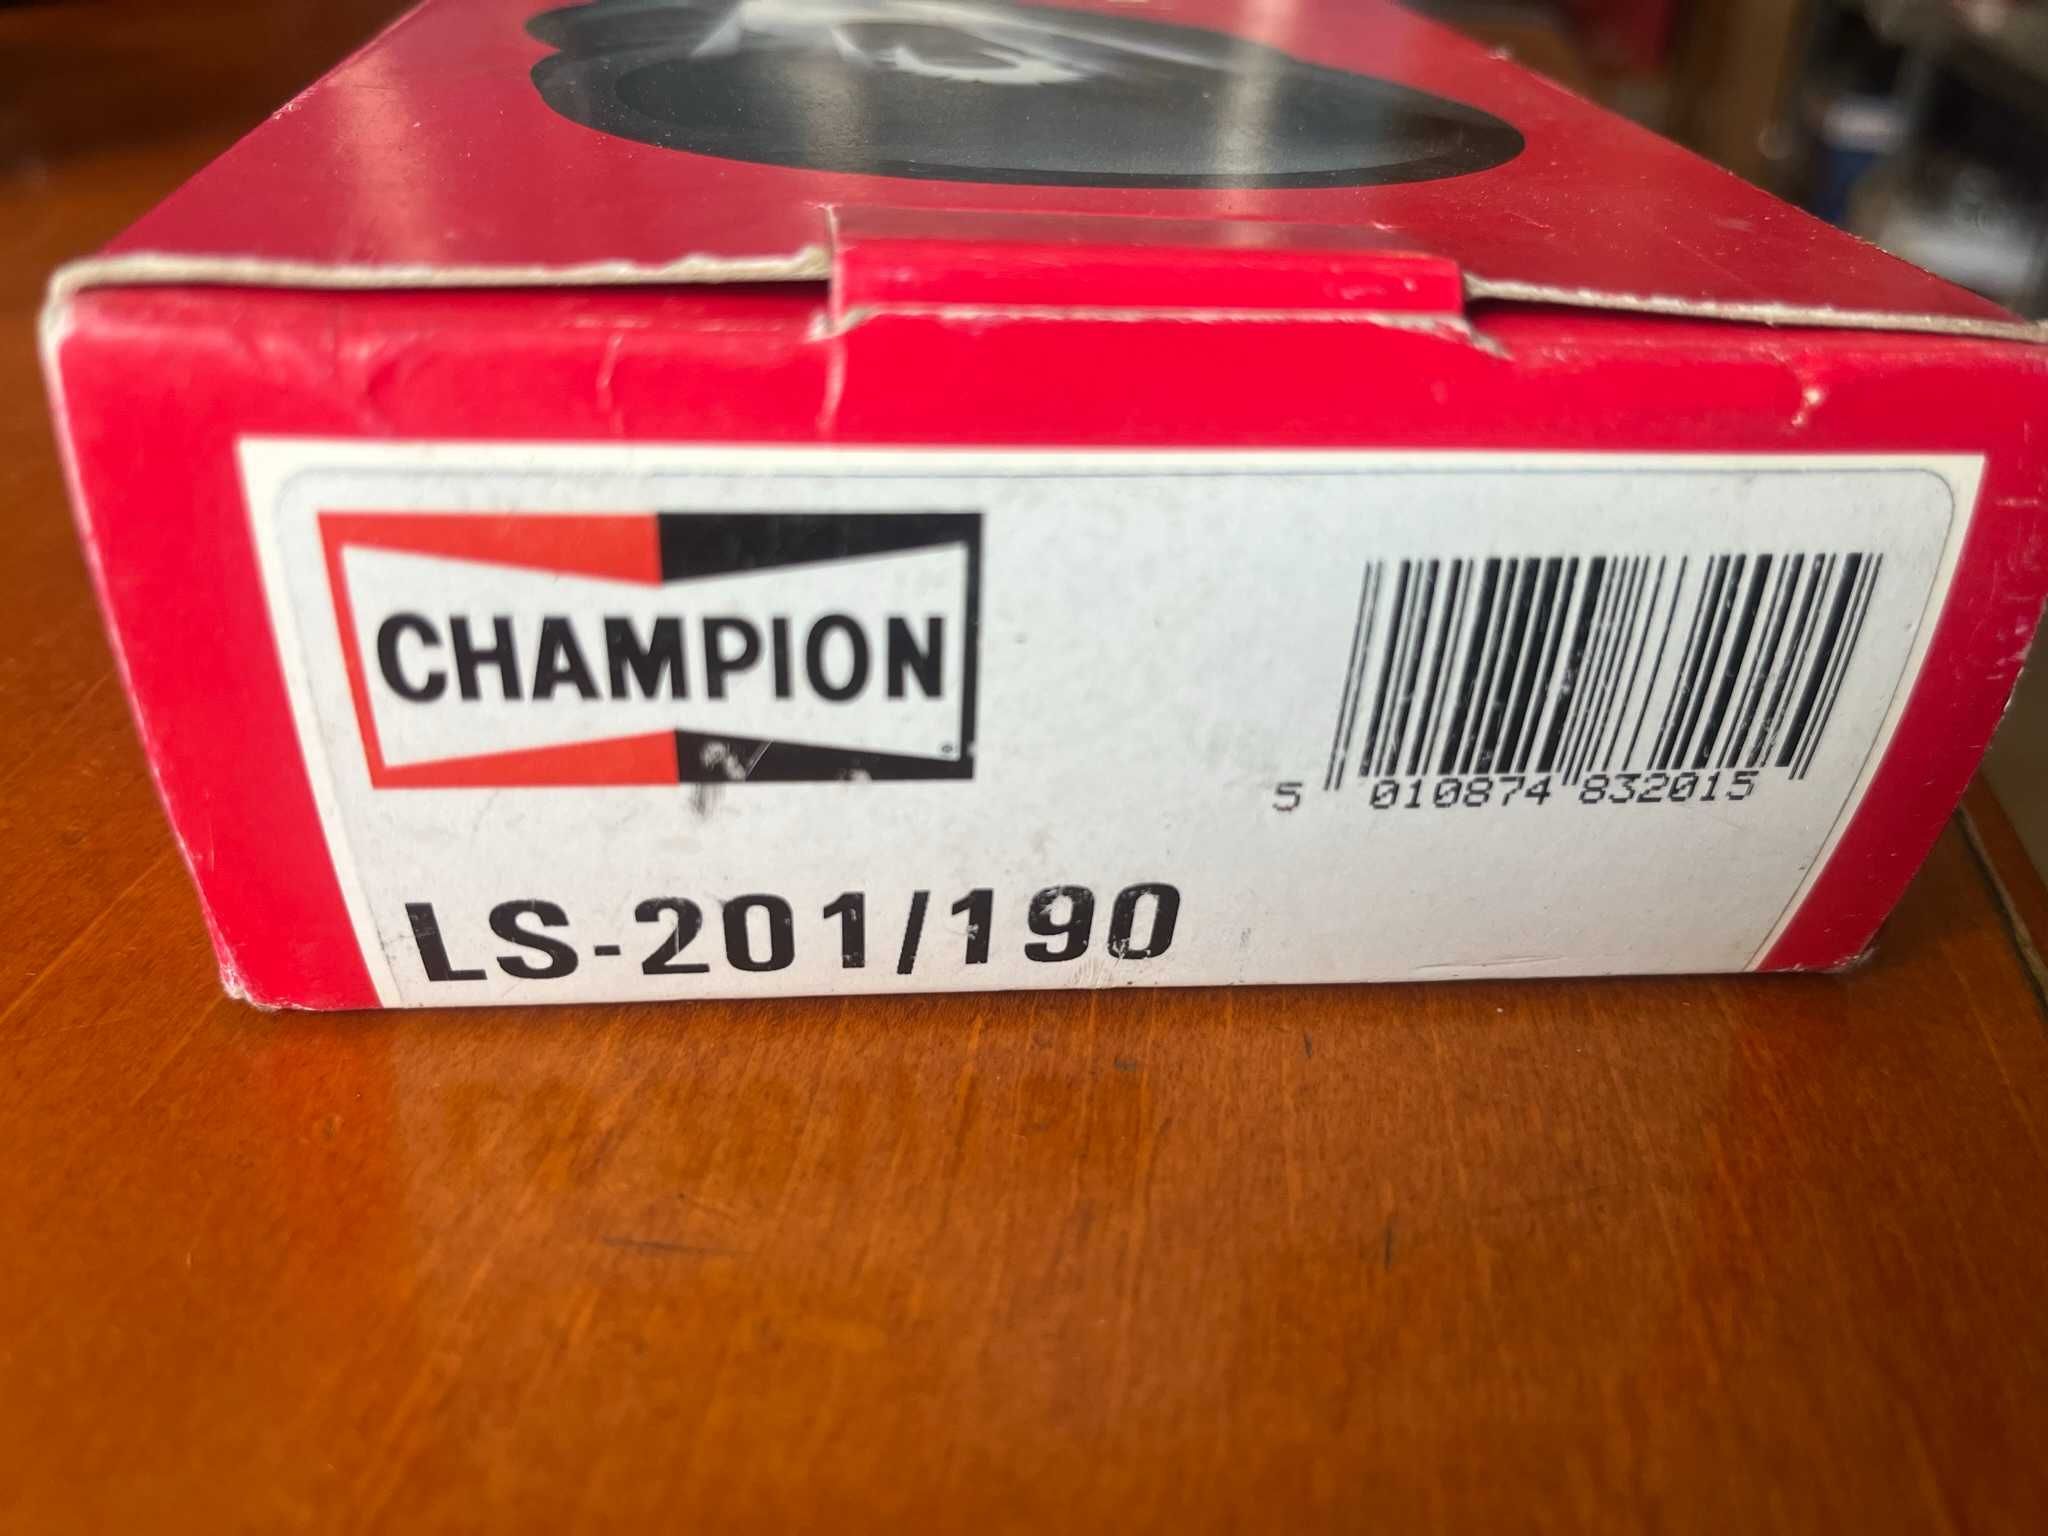 champion ls201/190